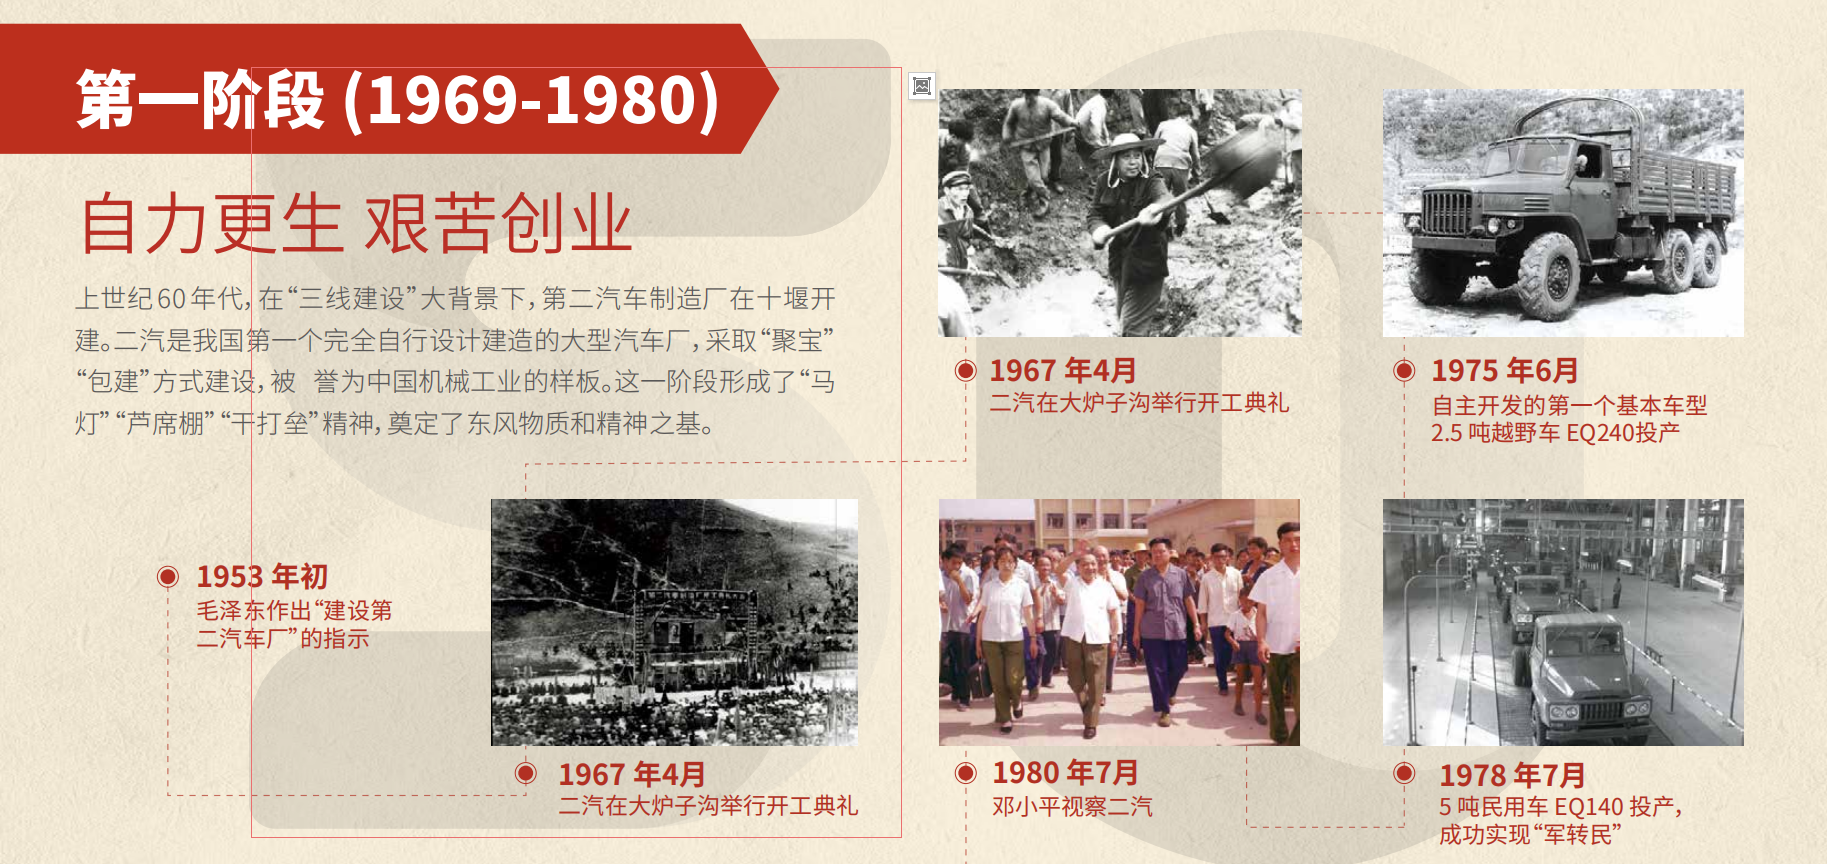 东风50周年大事记第一阶段